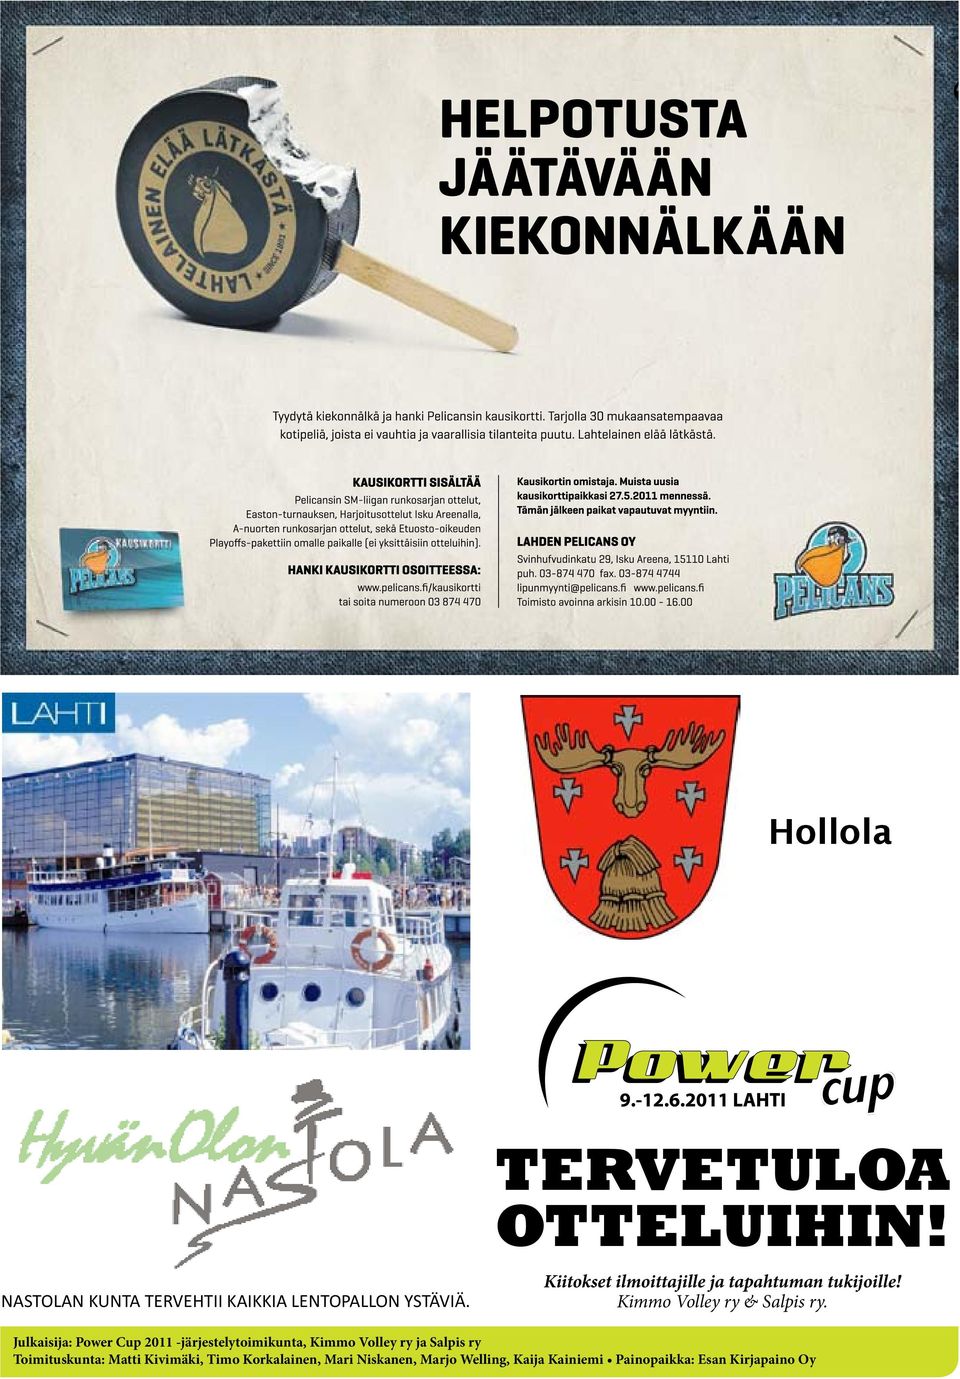 Julkaisija: Power Cup 2011 -järjestelytoimikunta, Kimmo Volley ry ja Salpis ry